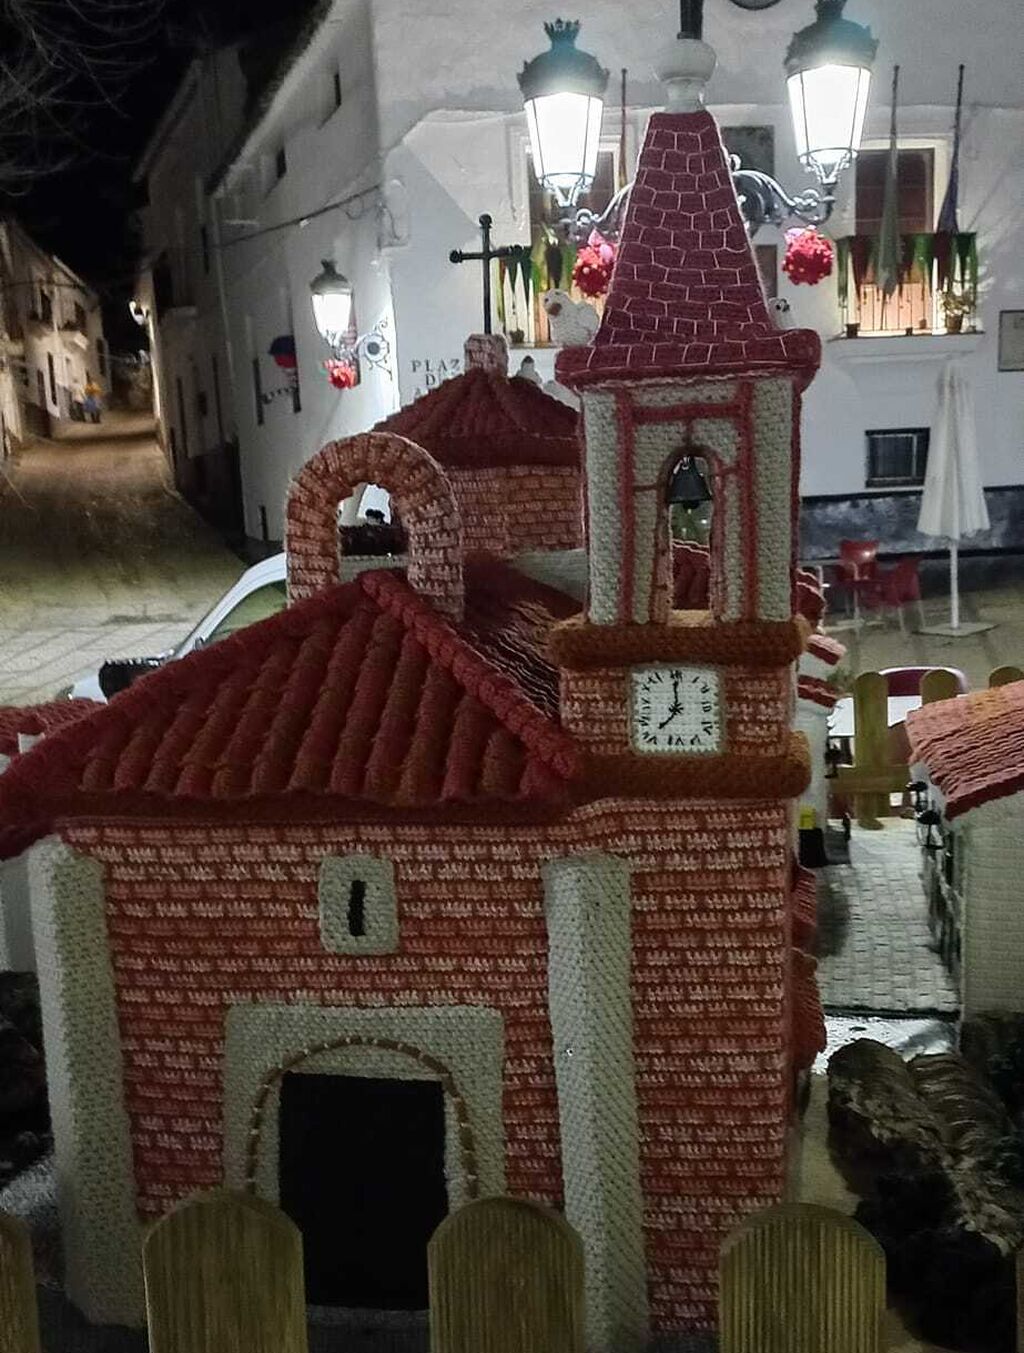 As&iacute; de bonito est&aacute; este pueblo serrano de Huelva vestido de ganchillo por Navidad